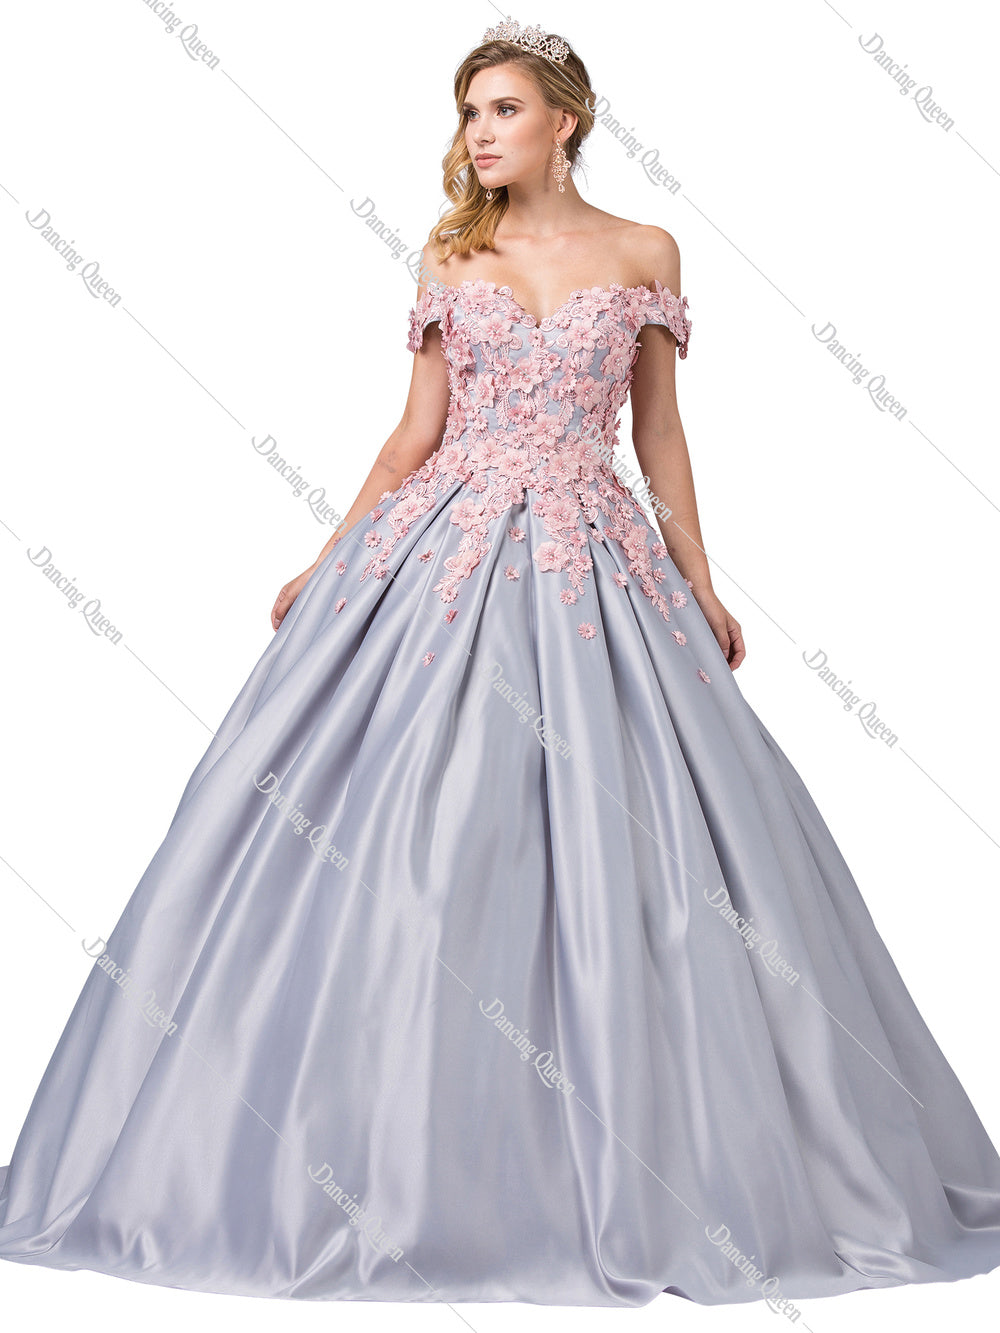 dancing queen quinceanera dresses 2019